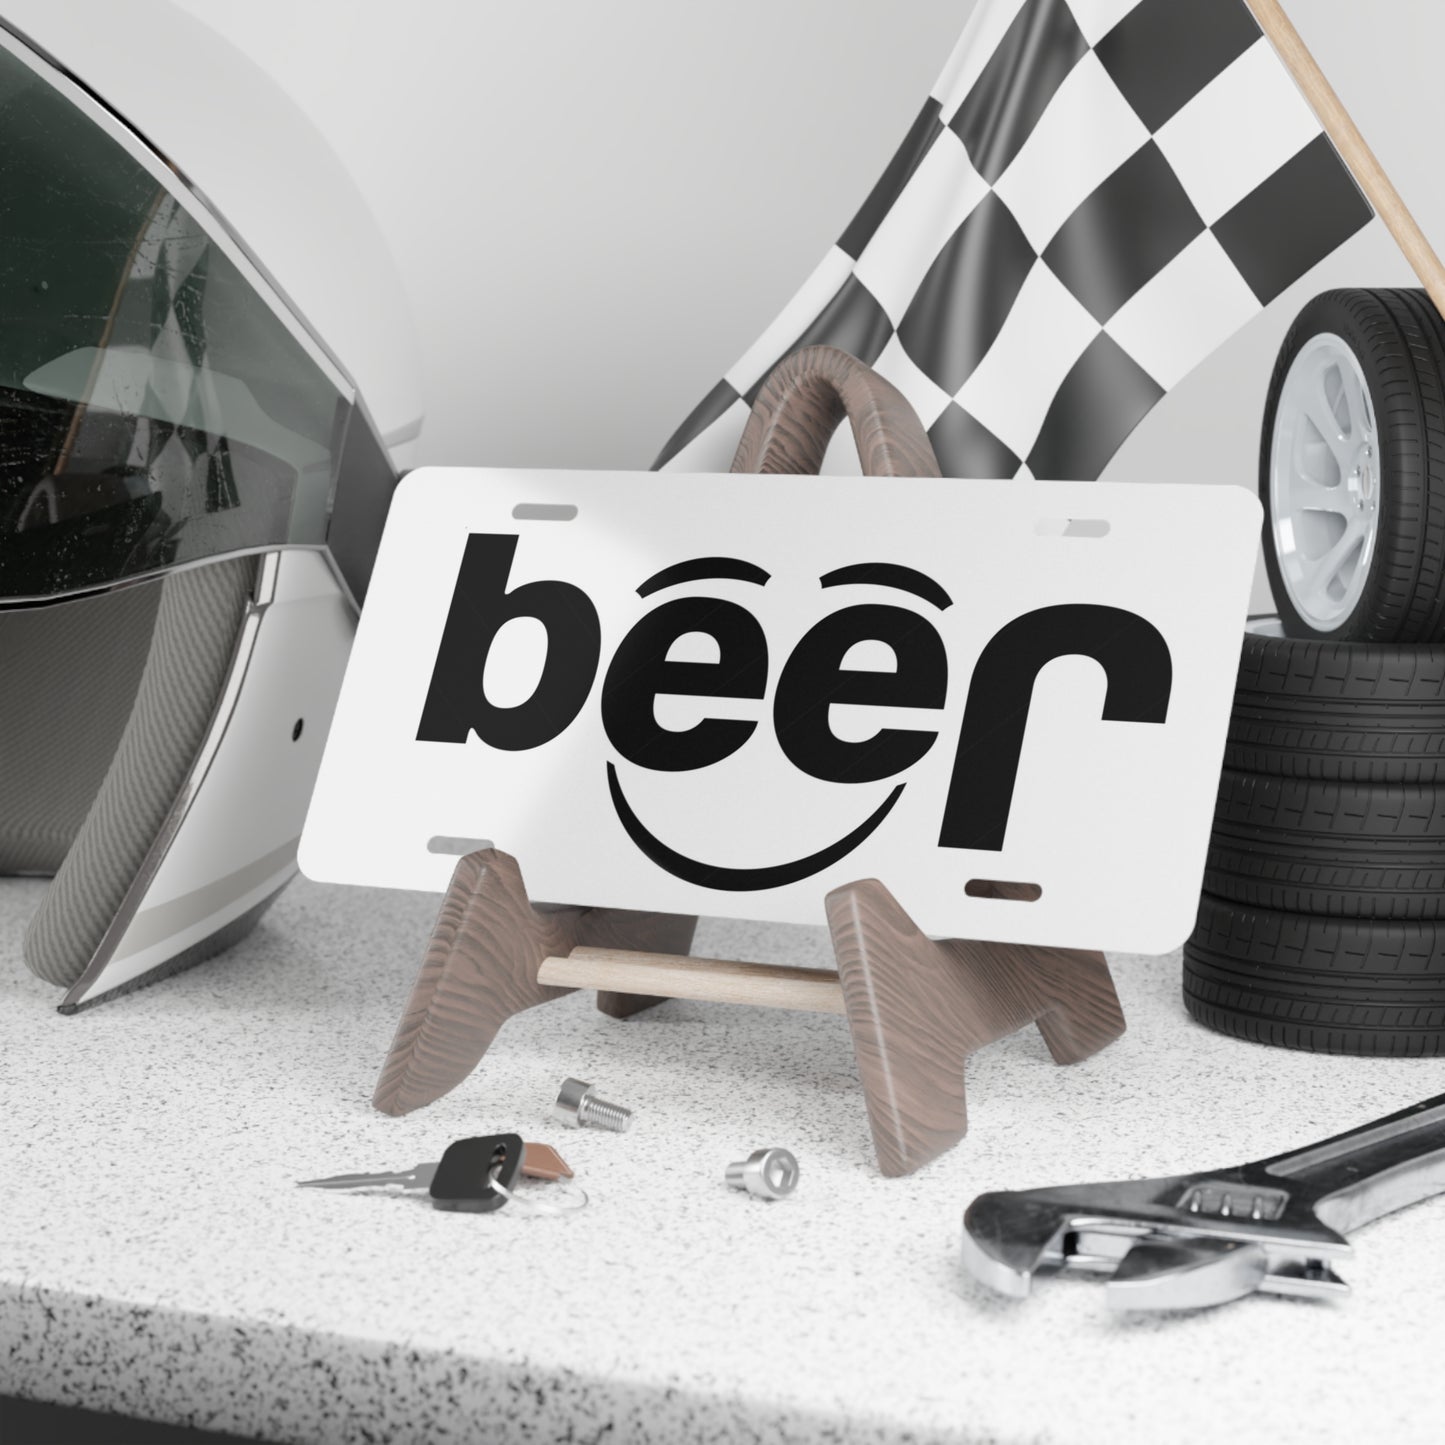 Jeep Beer Spoof Vanity License Plates